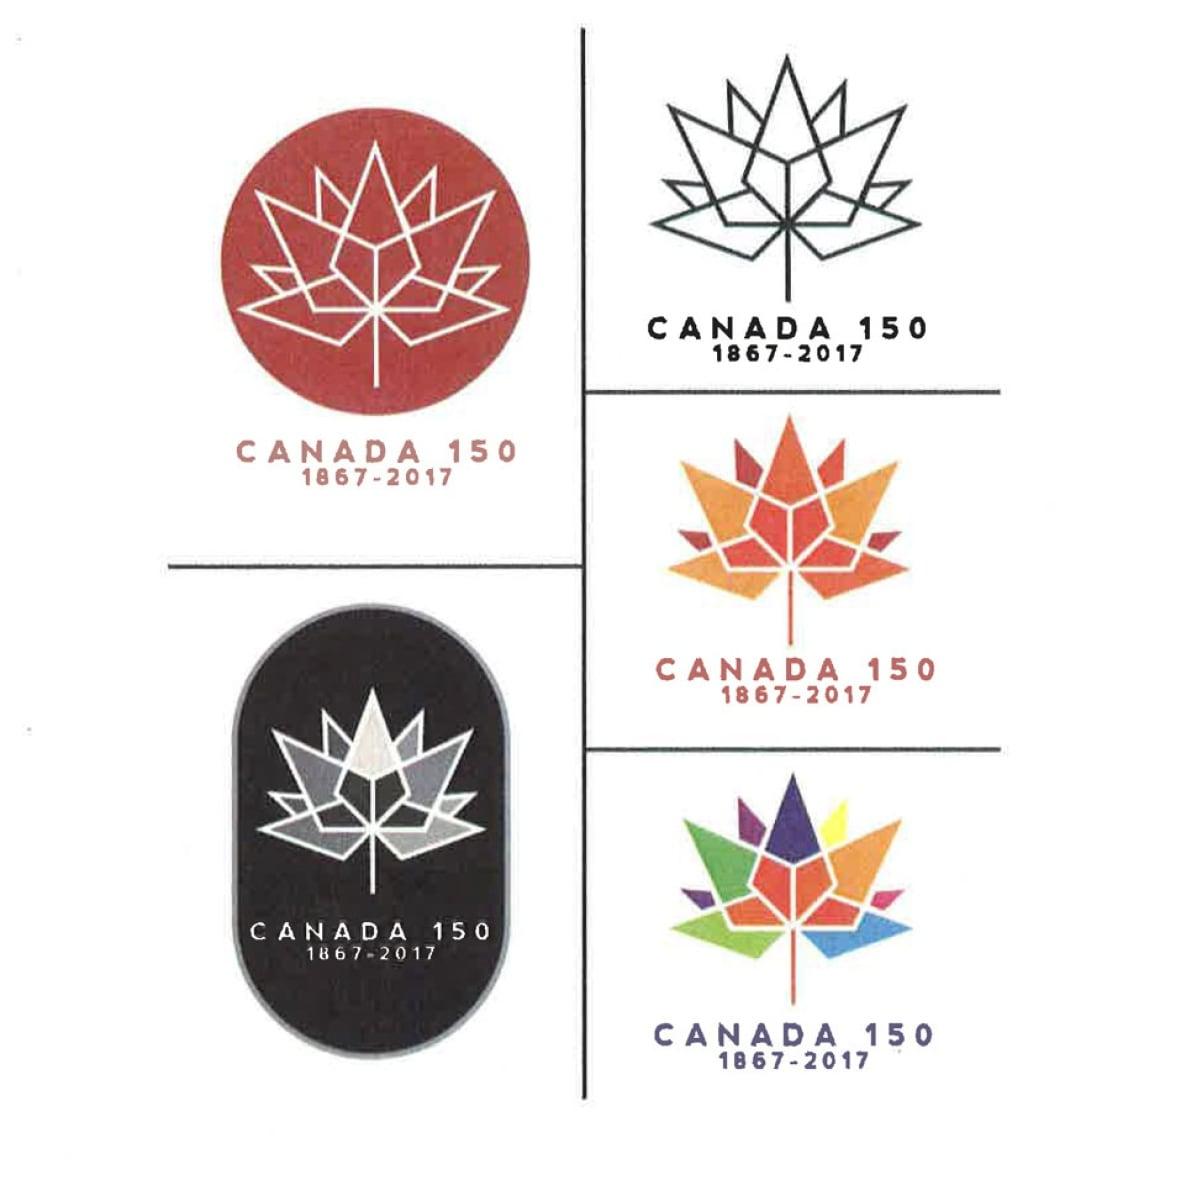 Centenial Logo - Canada 150 logo called 'confusing' by Centennial logo creator | CBC News